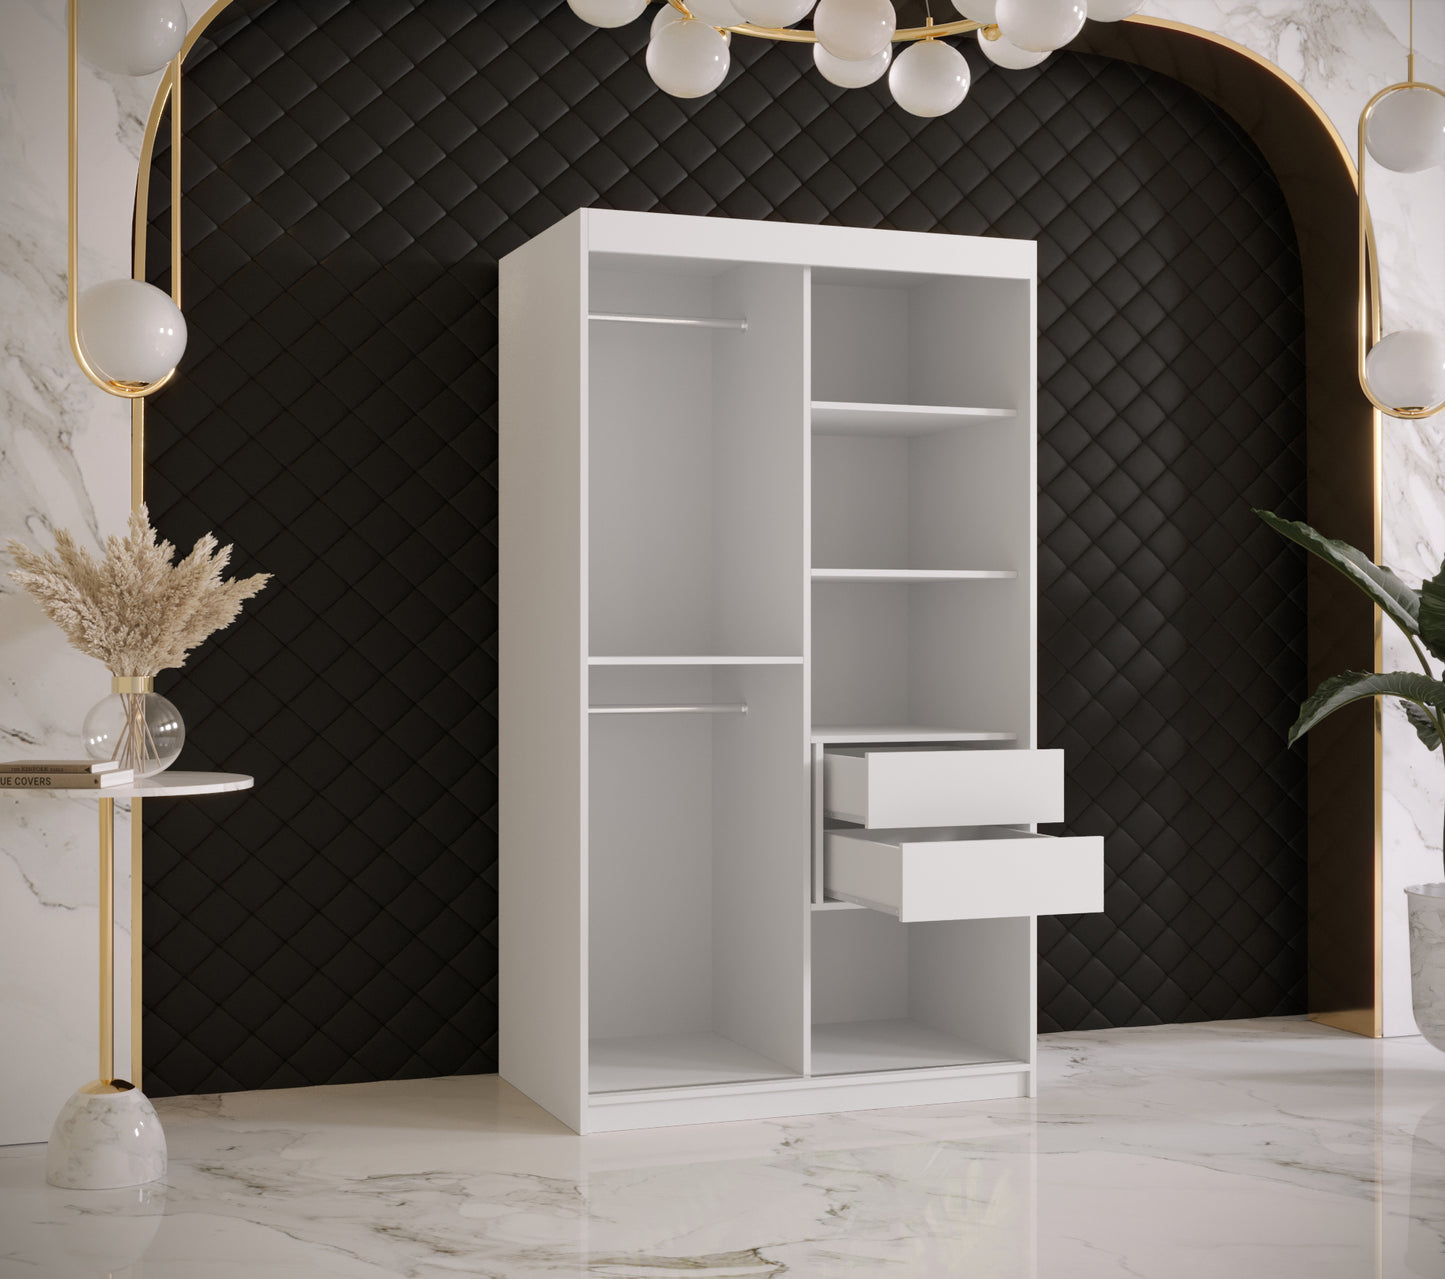 RAMIRA 1 - Wardrobe Sliding Door in Black or White Combinations, Shelves, Rails, Drawer optional >100cm<